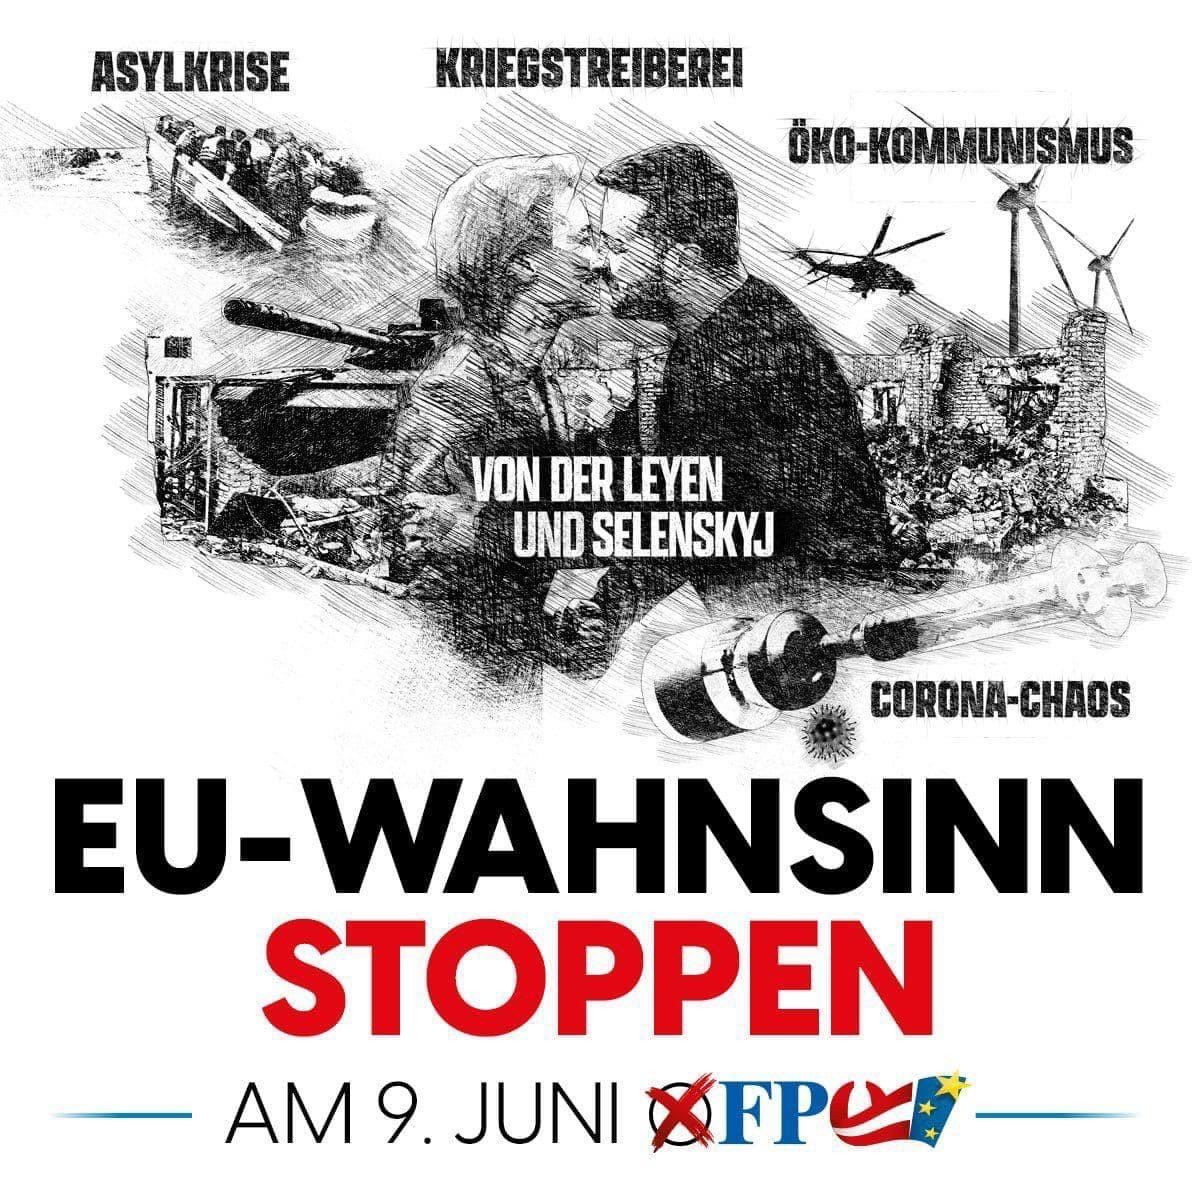 Антиукраїнський плакат австрійської партії на виборах до Європарламенту